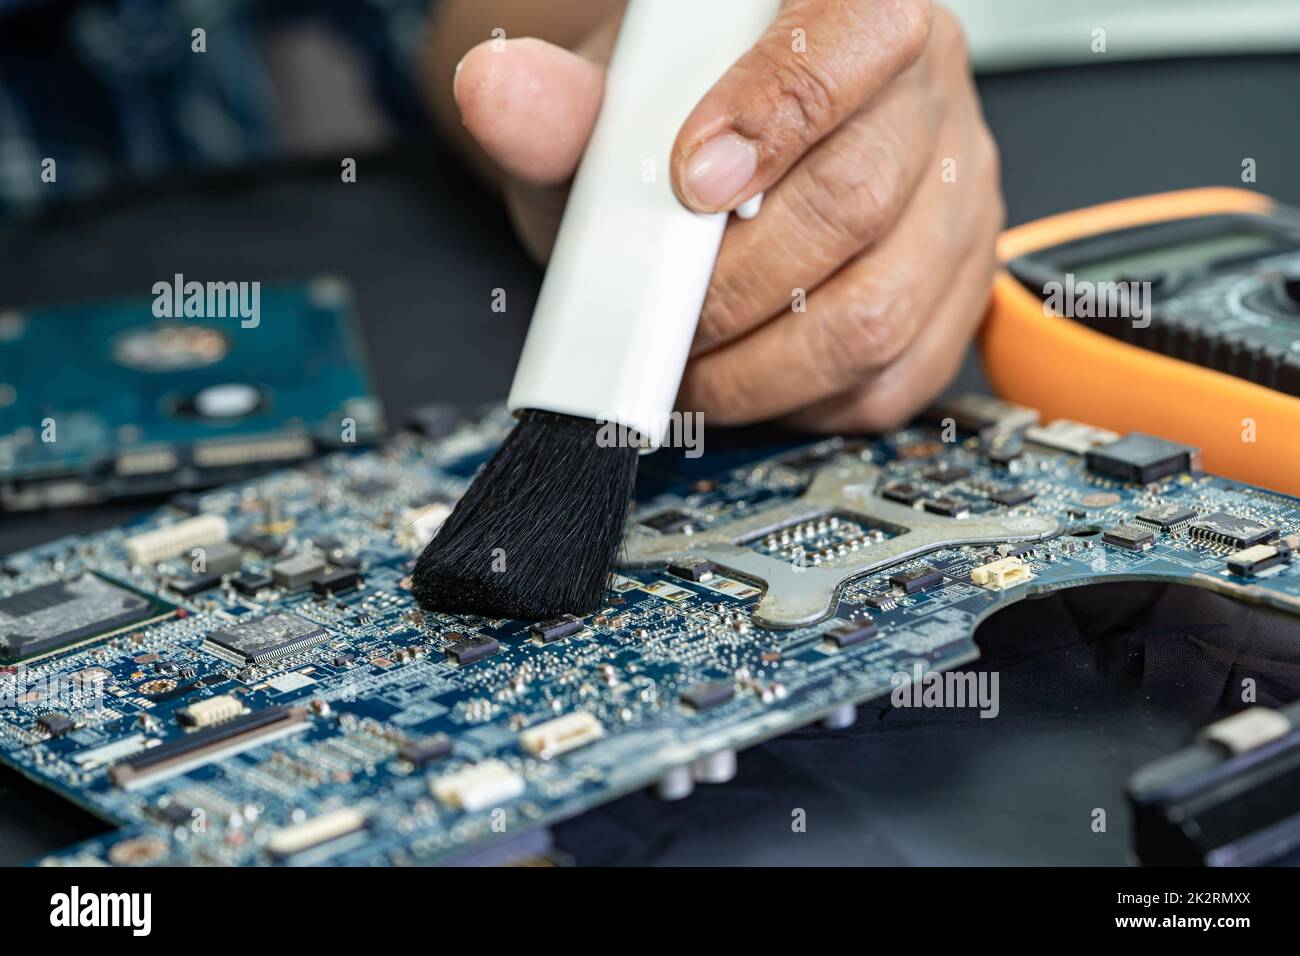 Der Techniker verwendet eine Bürste und eine Luftgebläse, um Staub im Leiterplattencomputer zu reinigen. Reparatur Upgrade und Wartung Technologie. Stockfoto